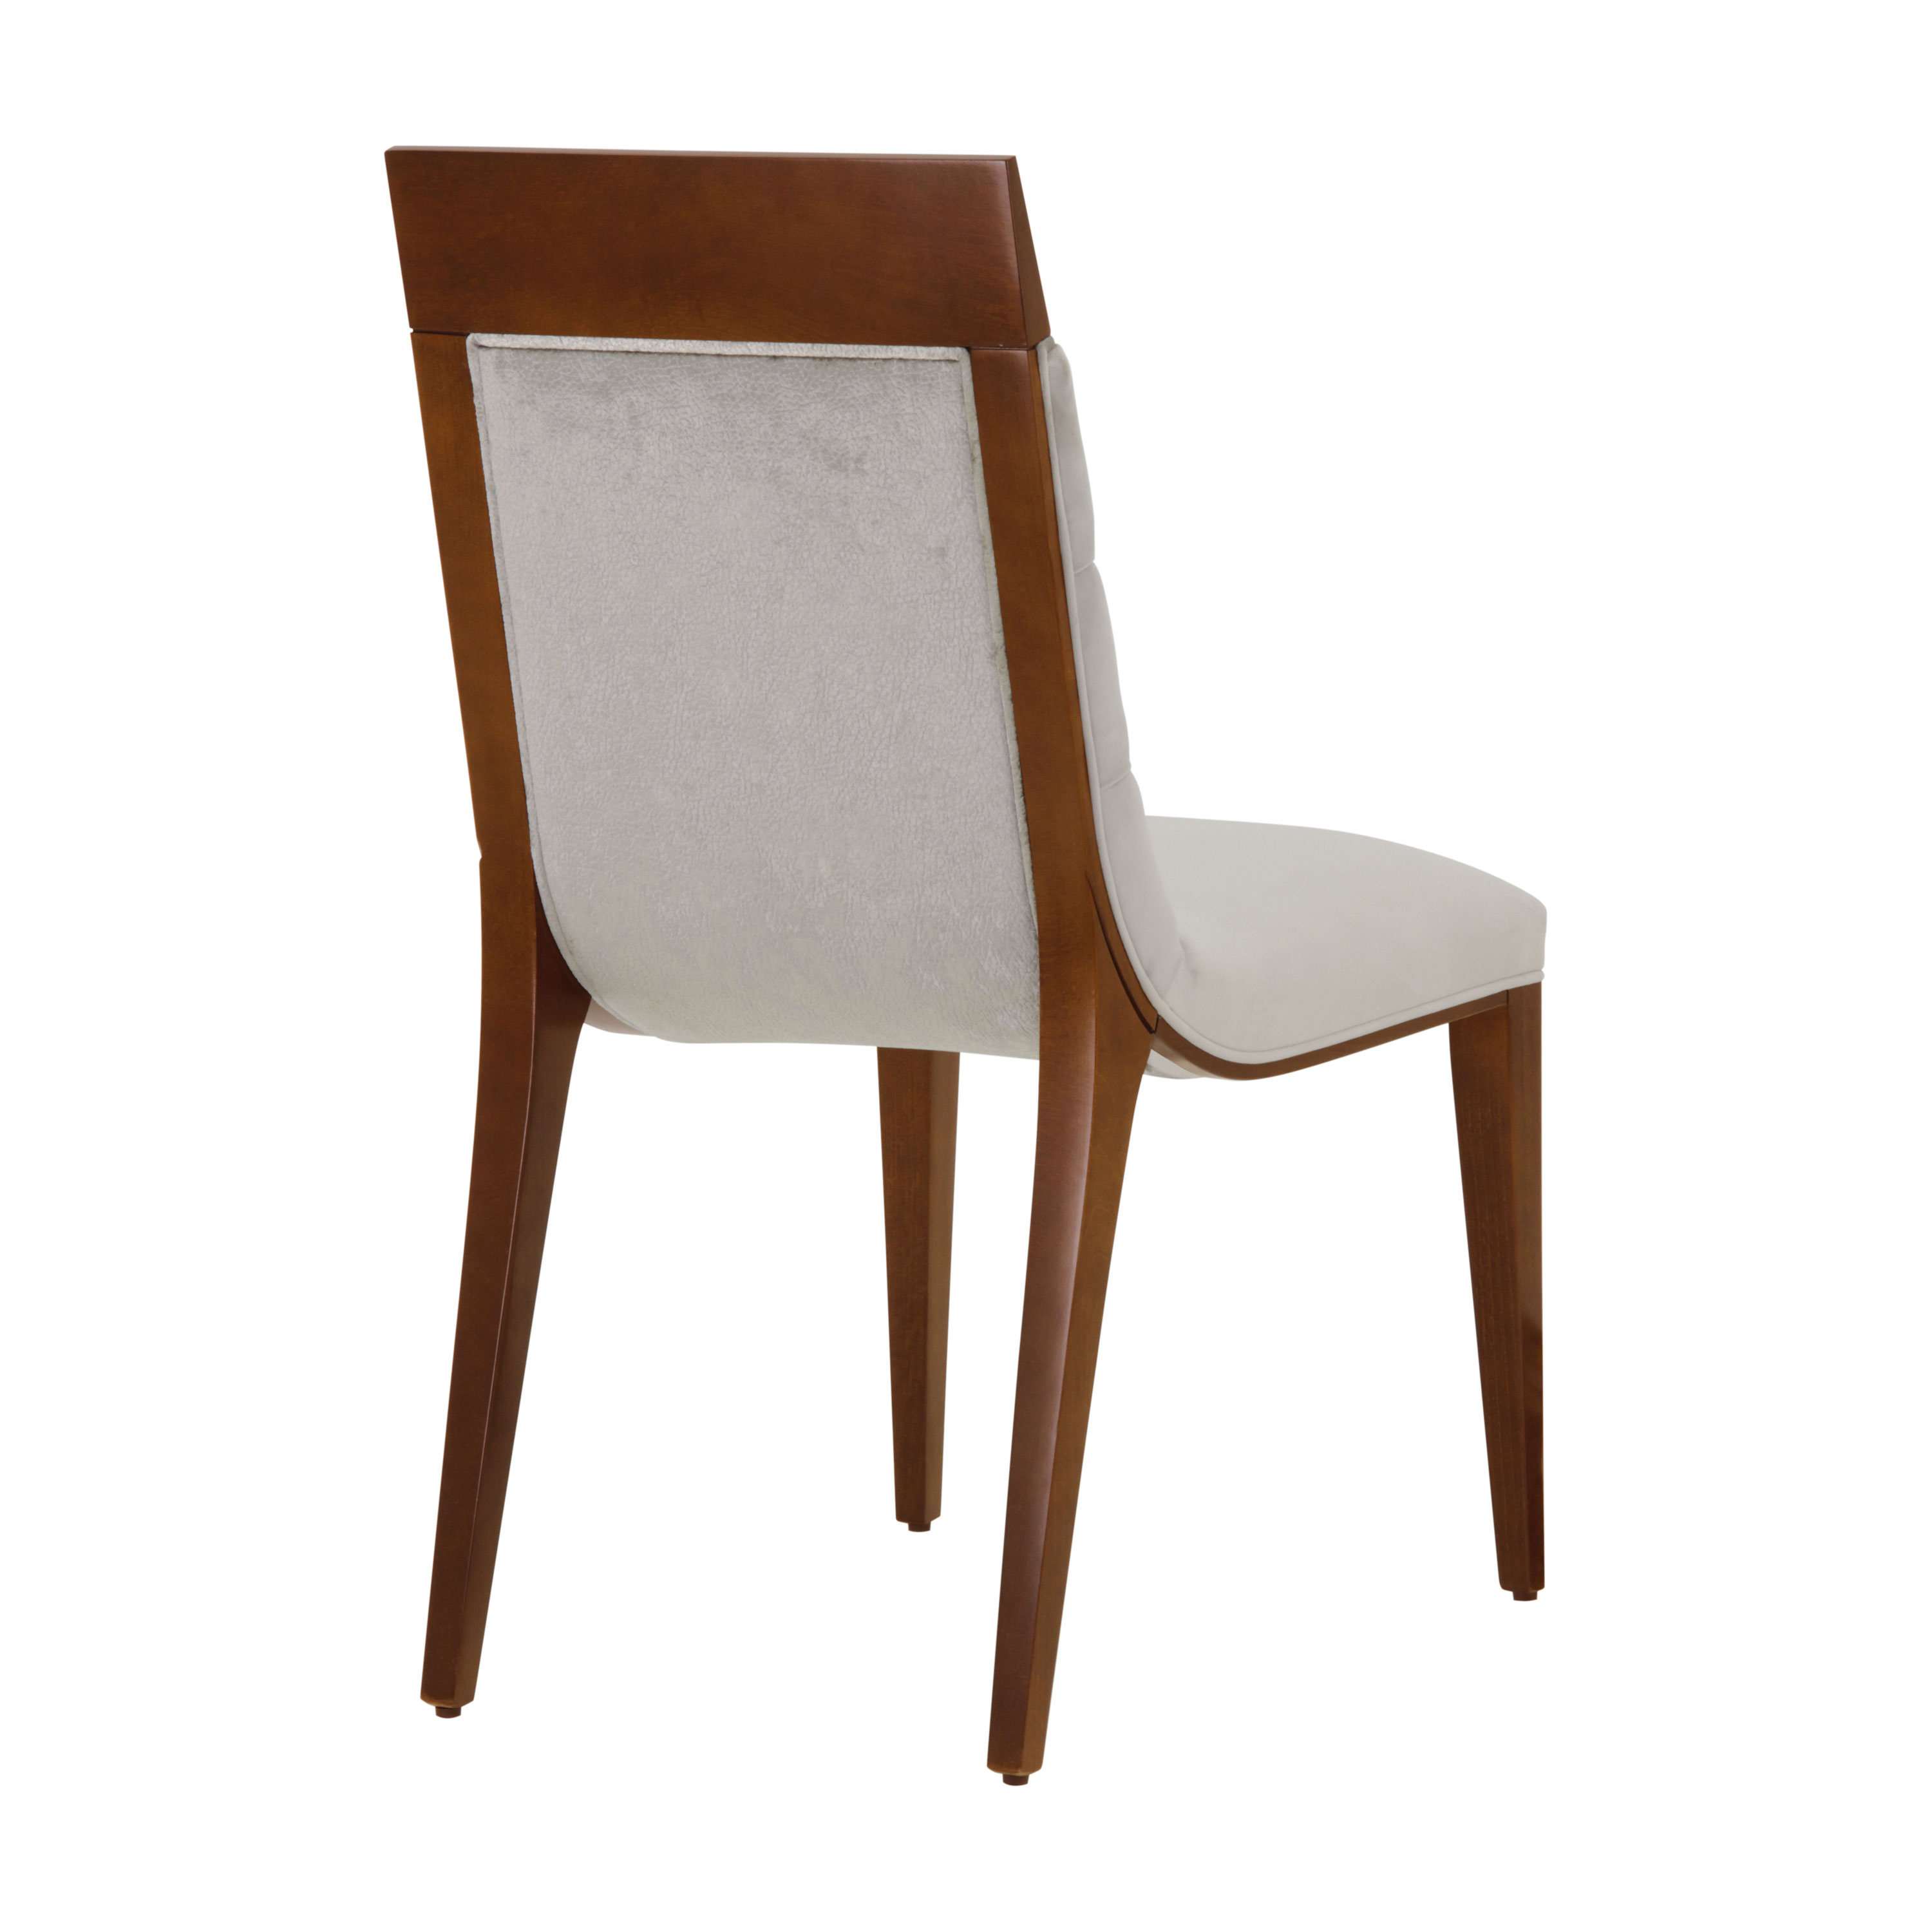 Produzione sedie classiche e moderne, divani e poltrone in stile